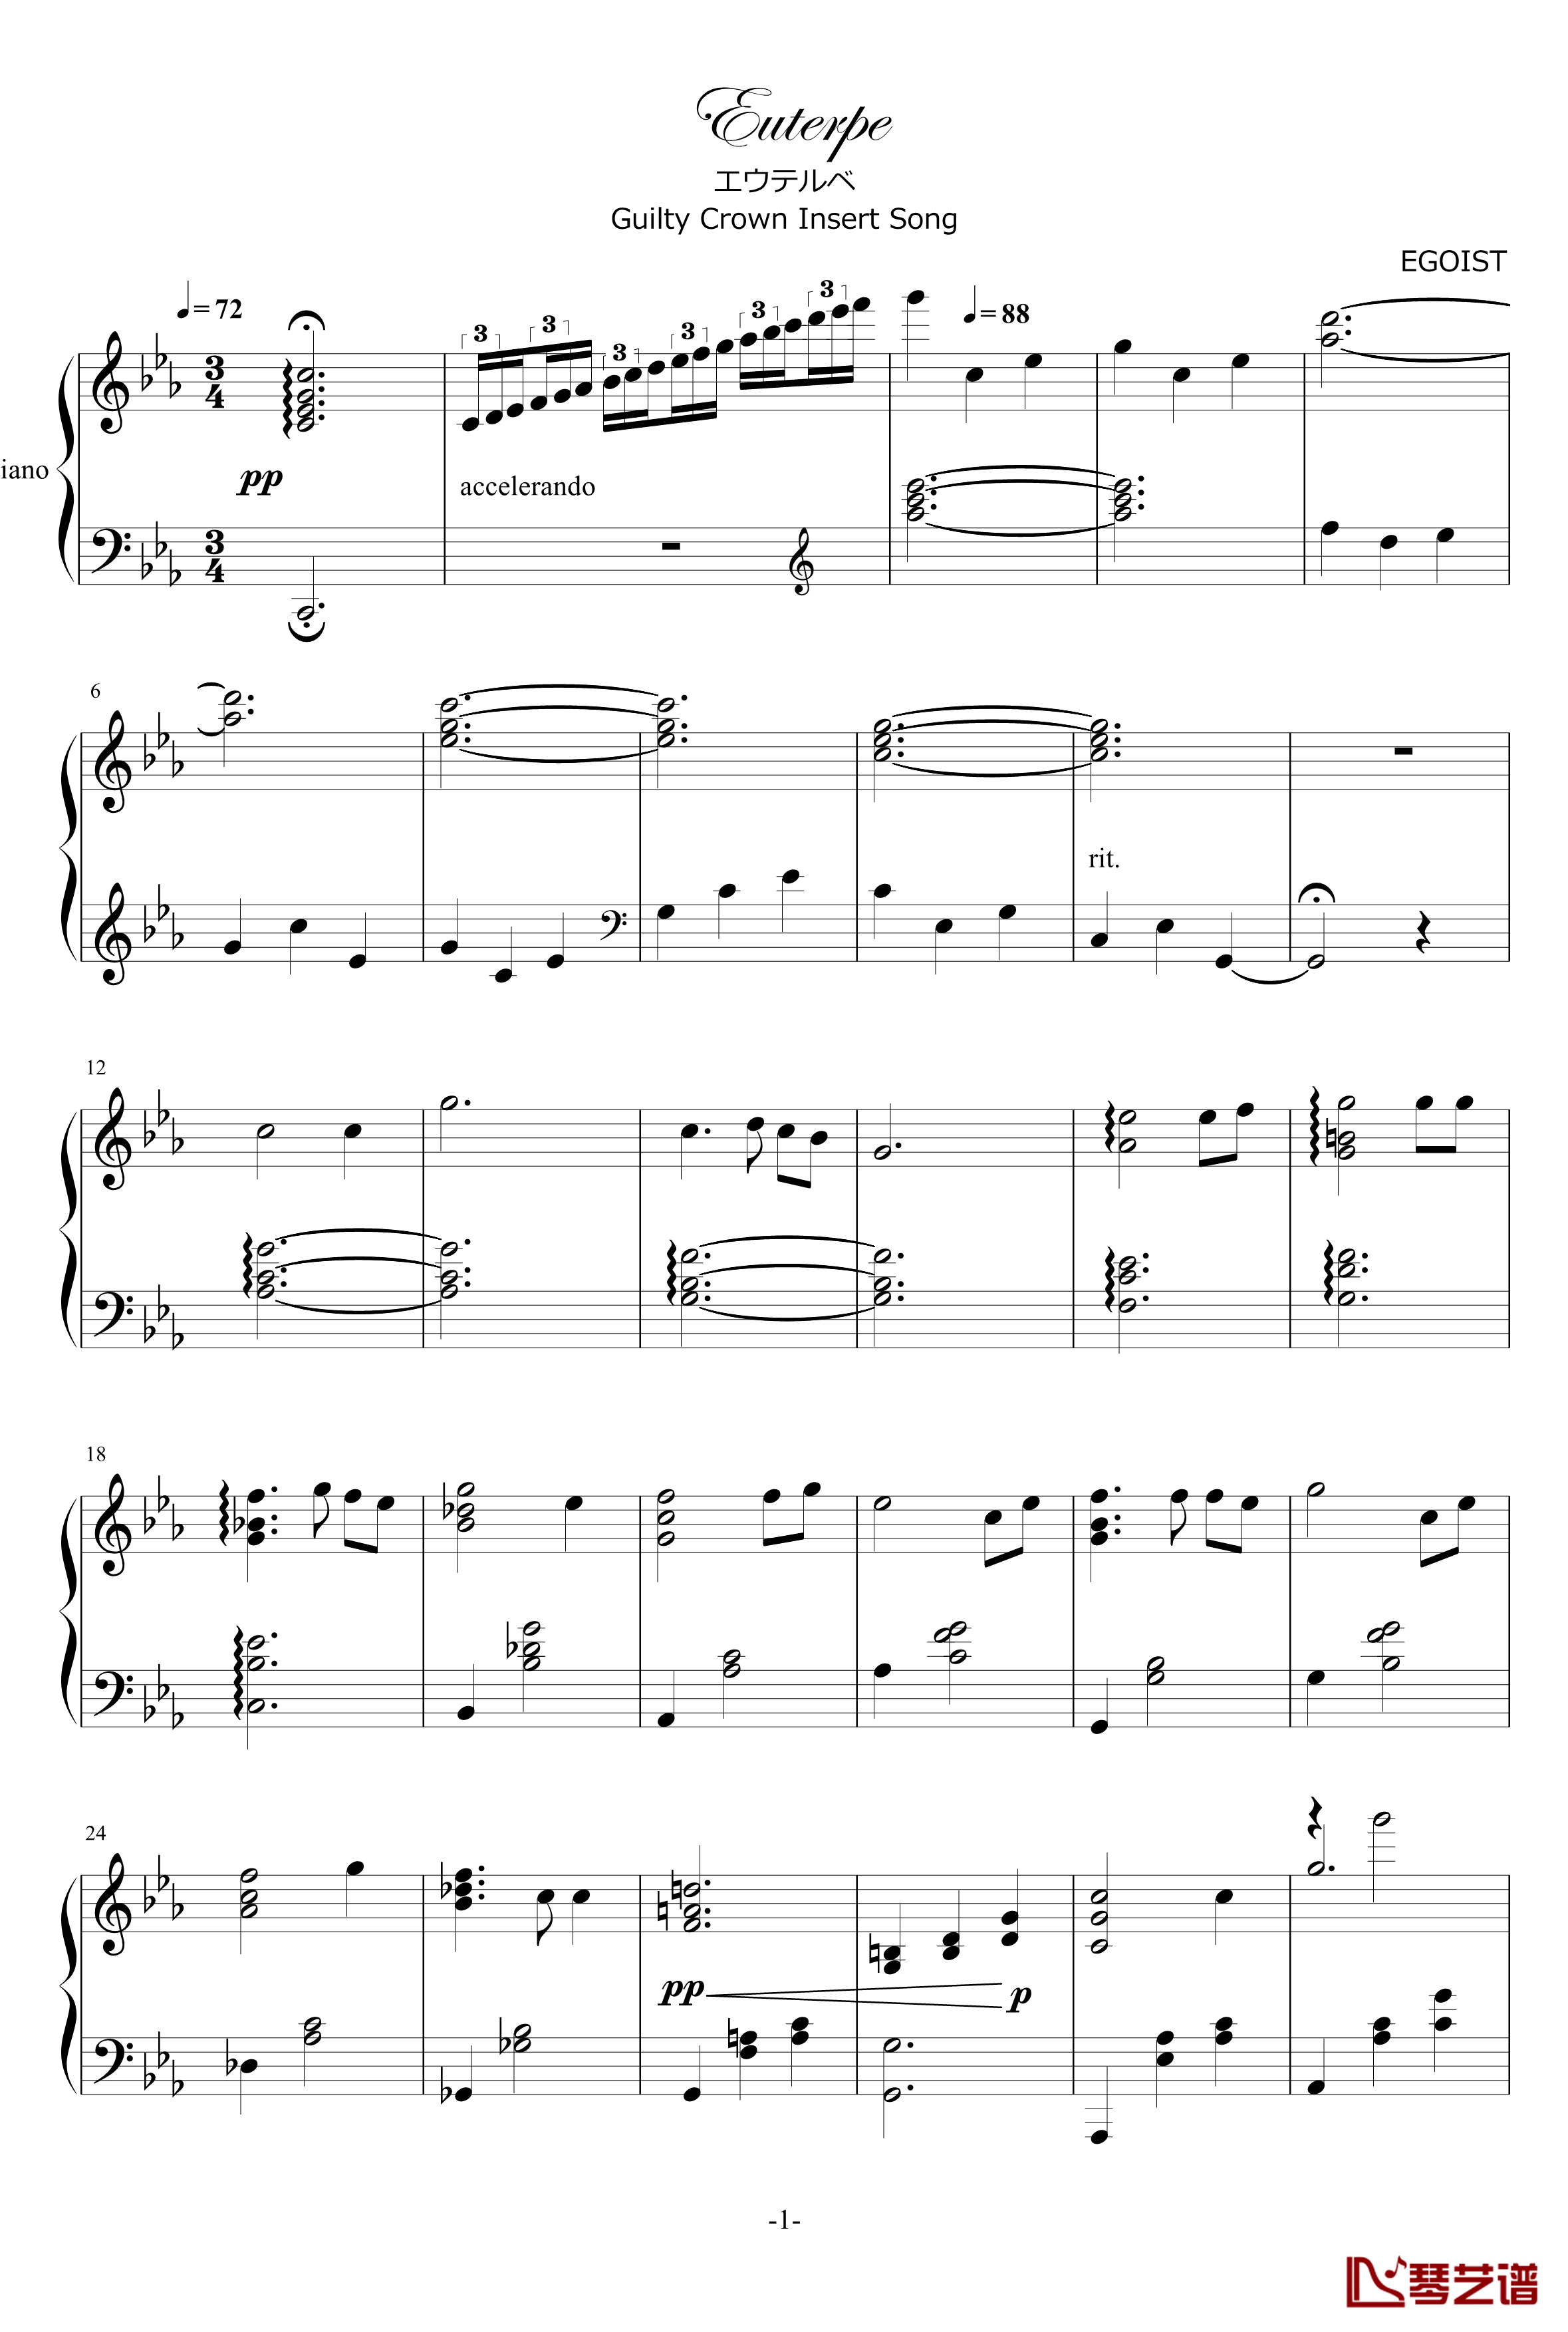 罪恶王冠Euterpe钢琴谱-Animenz简化版v2-エウテルペ-EGOIST1